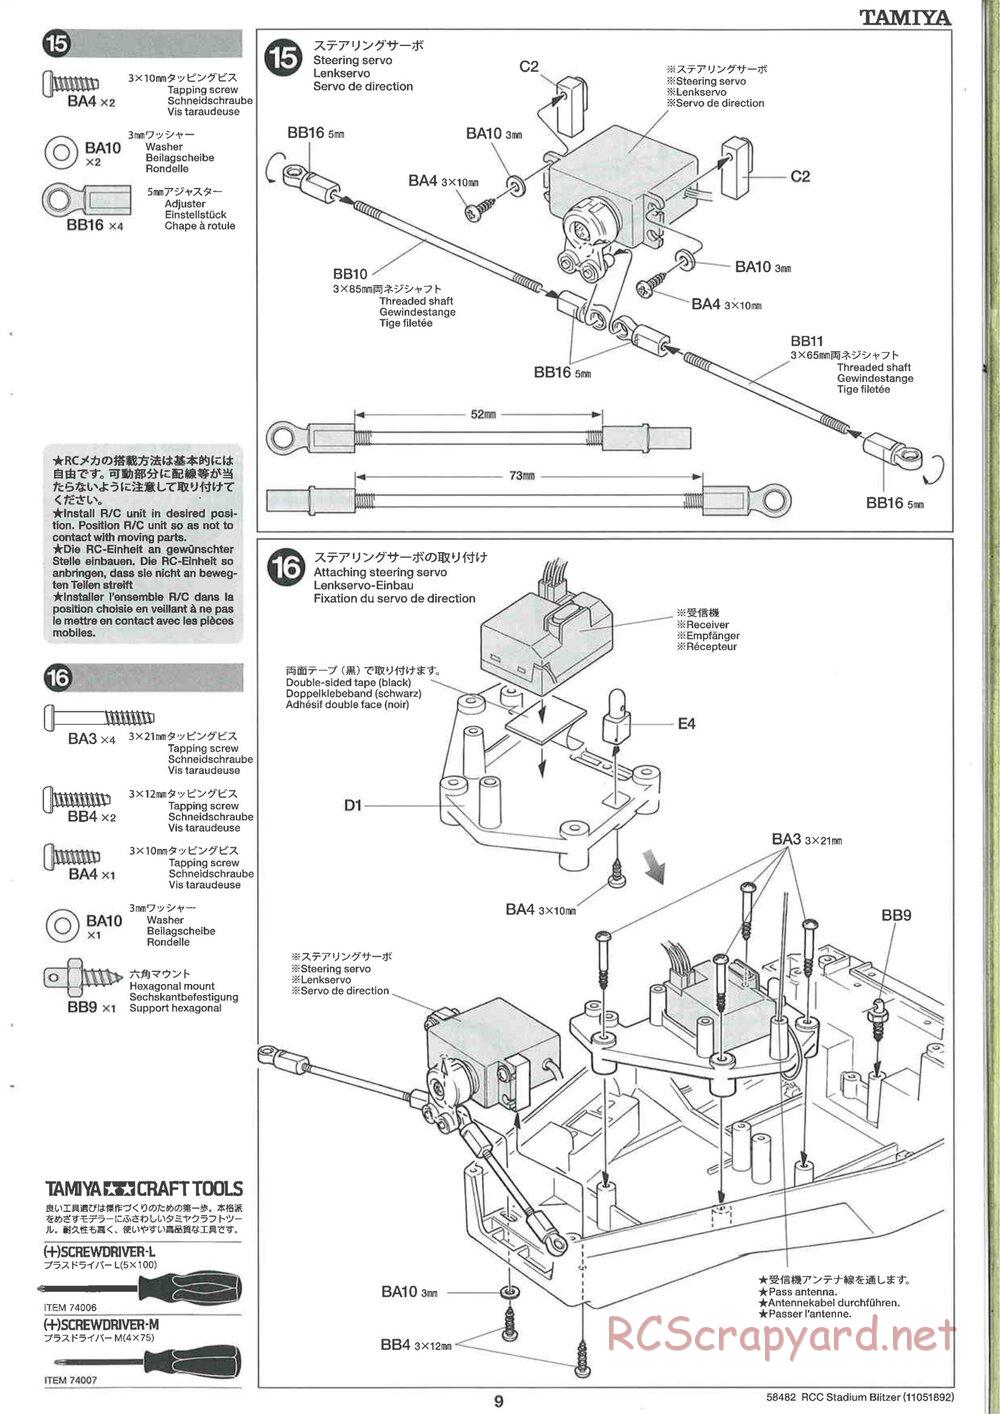 Tamiya - Stadium Blitzer 2010 - FAL Chassis - Manual - Page 9